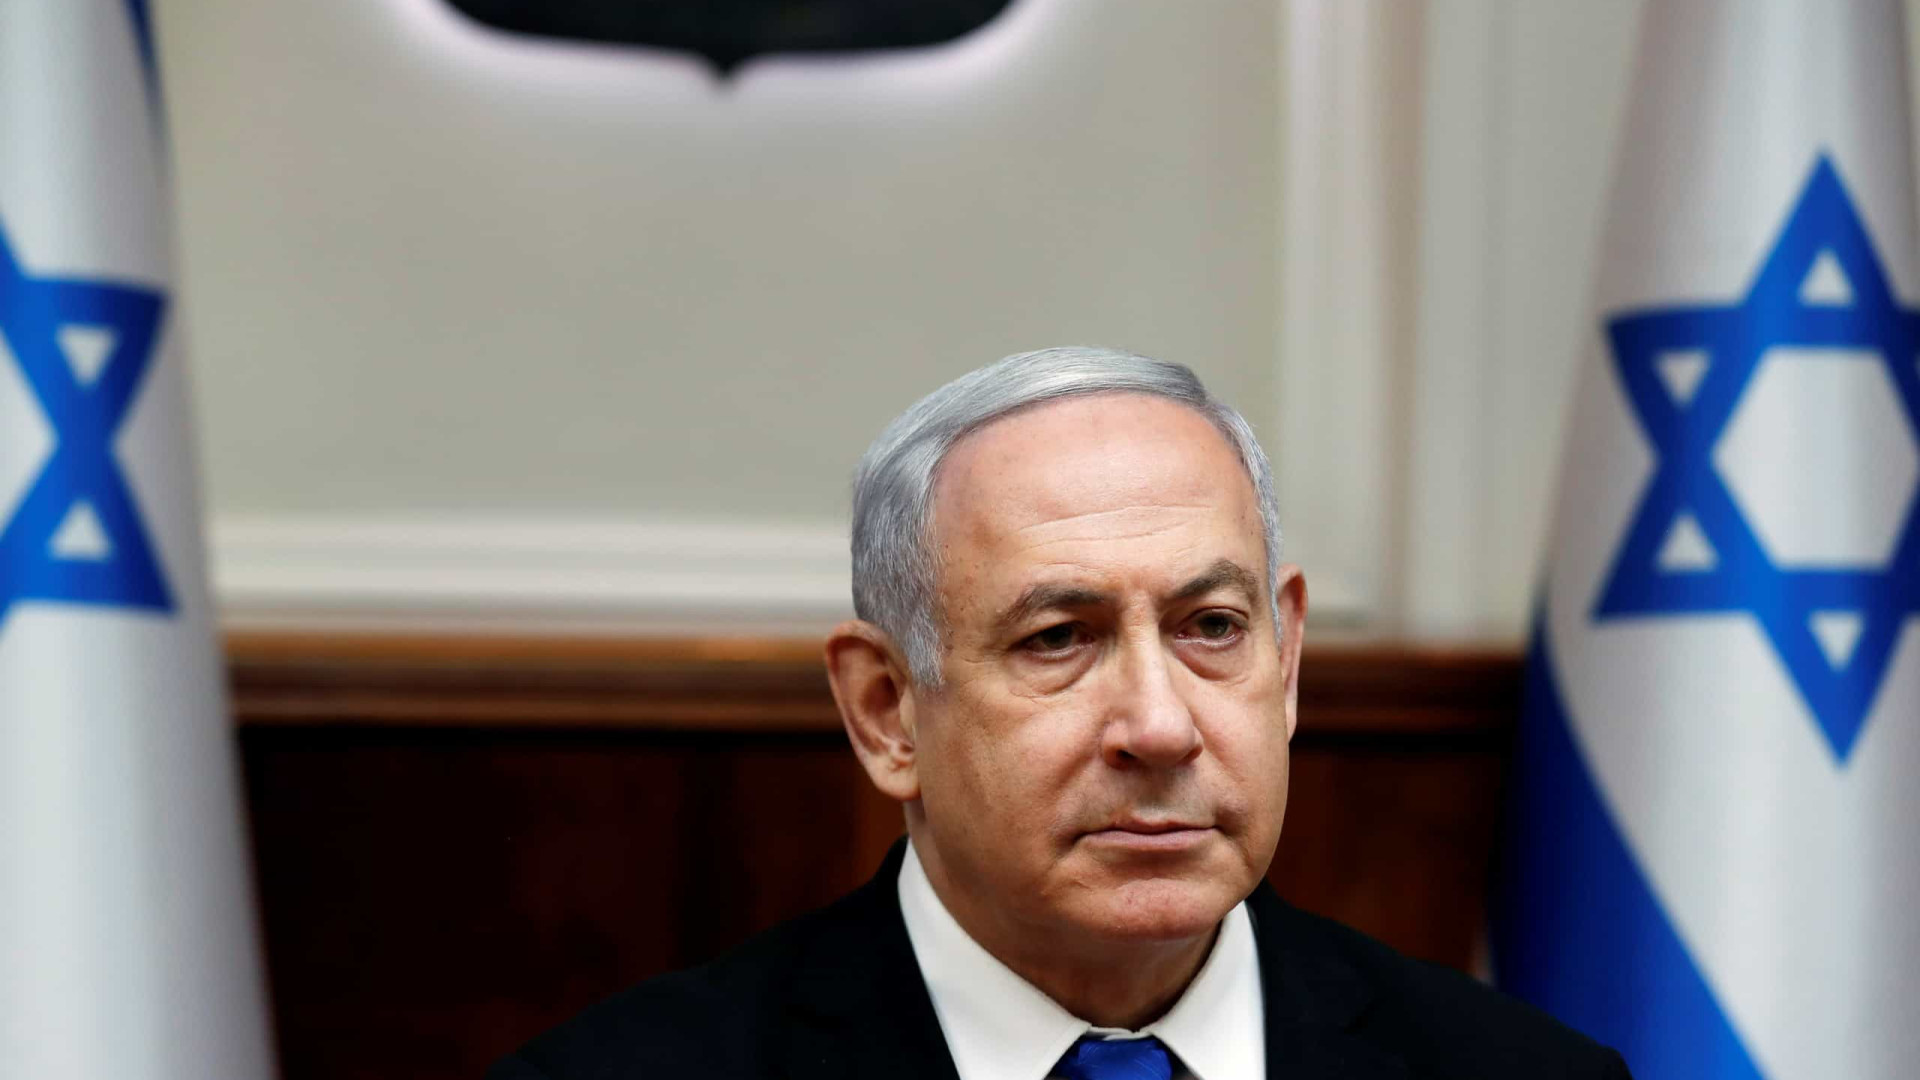 Partido de Netanyahu lidera, mas não garante maioria em Israel